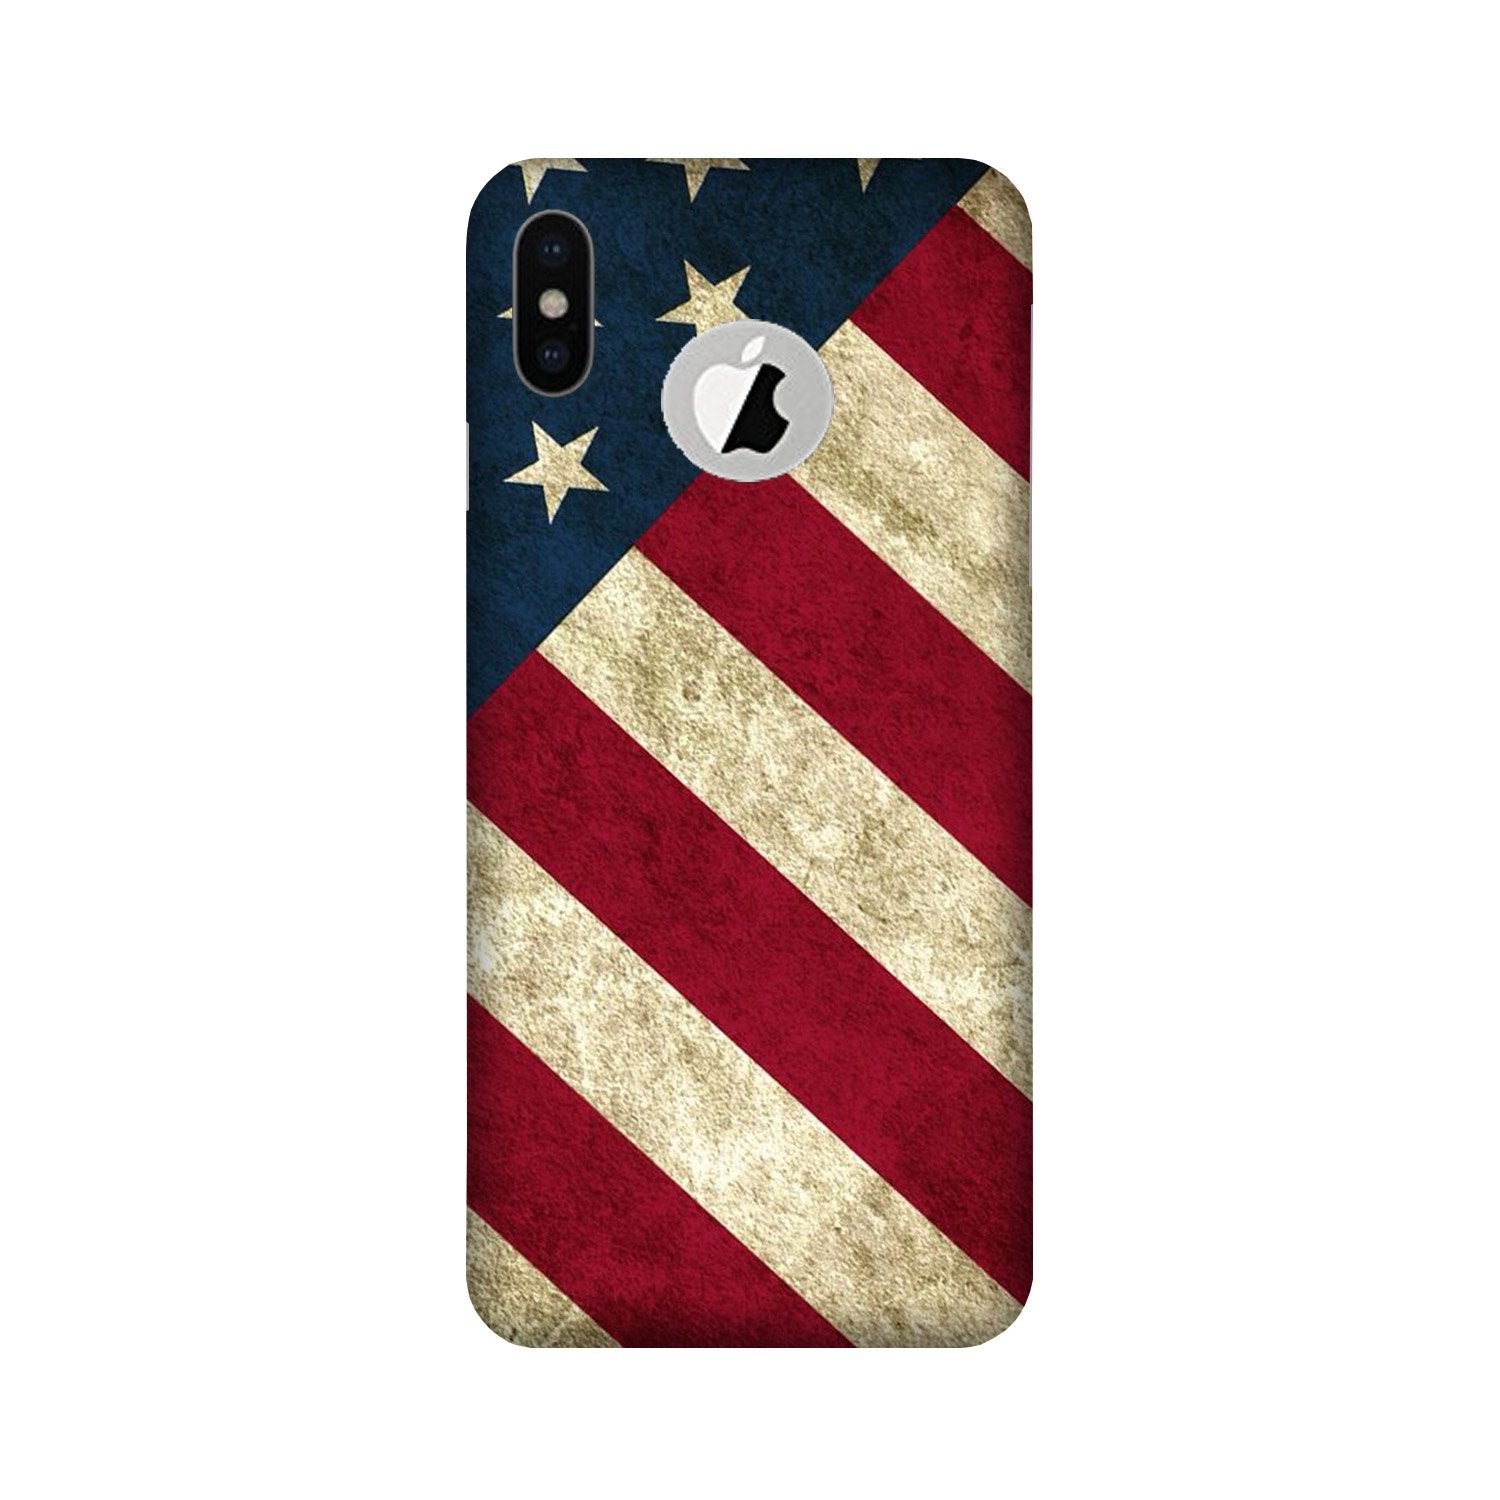 America Case for iPhone X logo cut